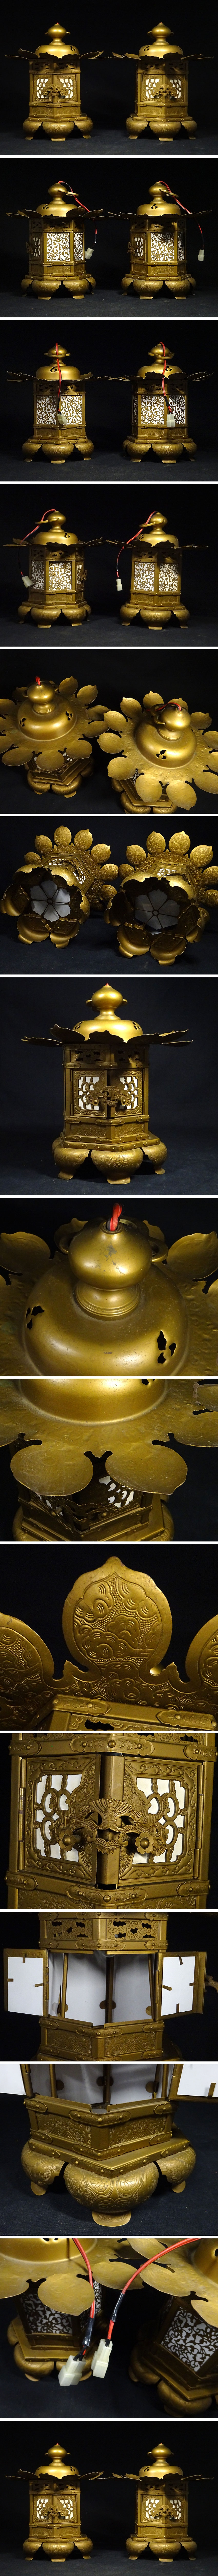 正規激安 緑屋fc□ 真鍮 吊灯籠 一対 寺院仏具 高約30cm 仏教美術 k8/9